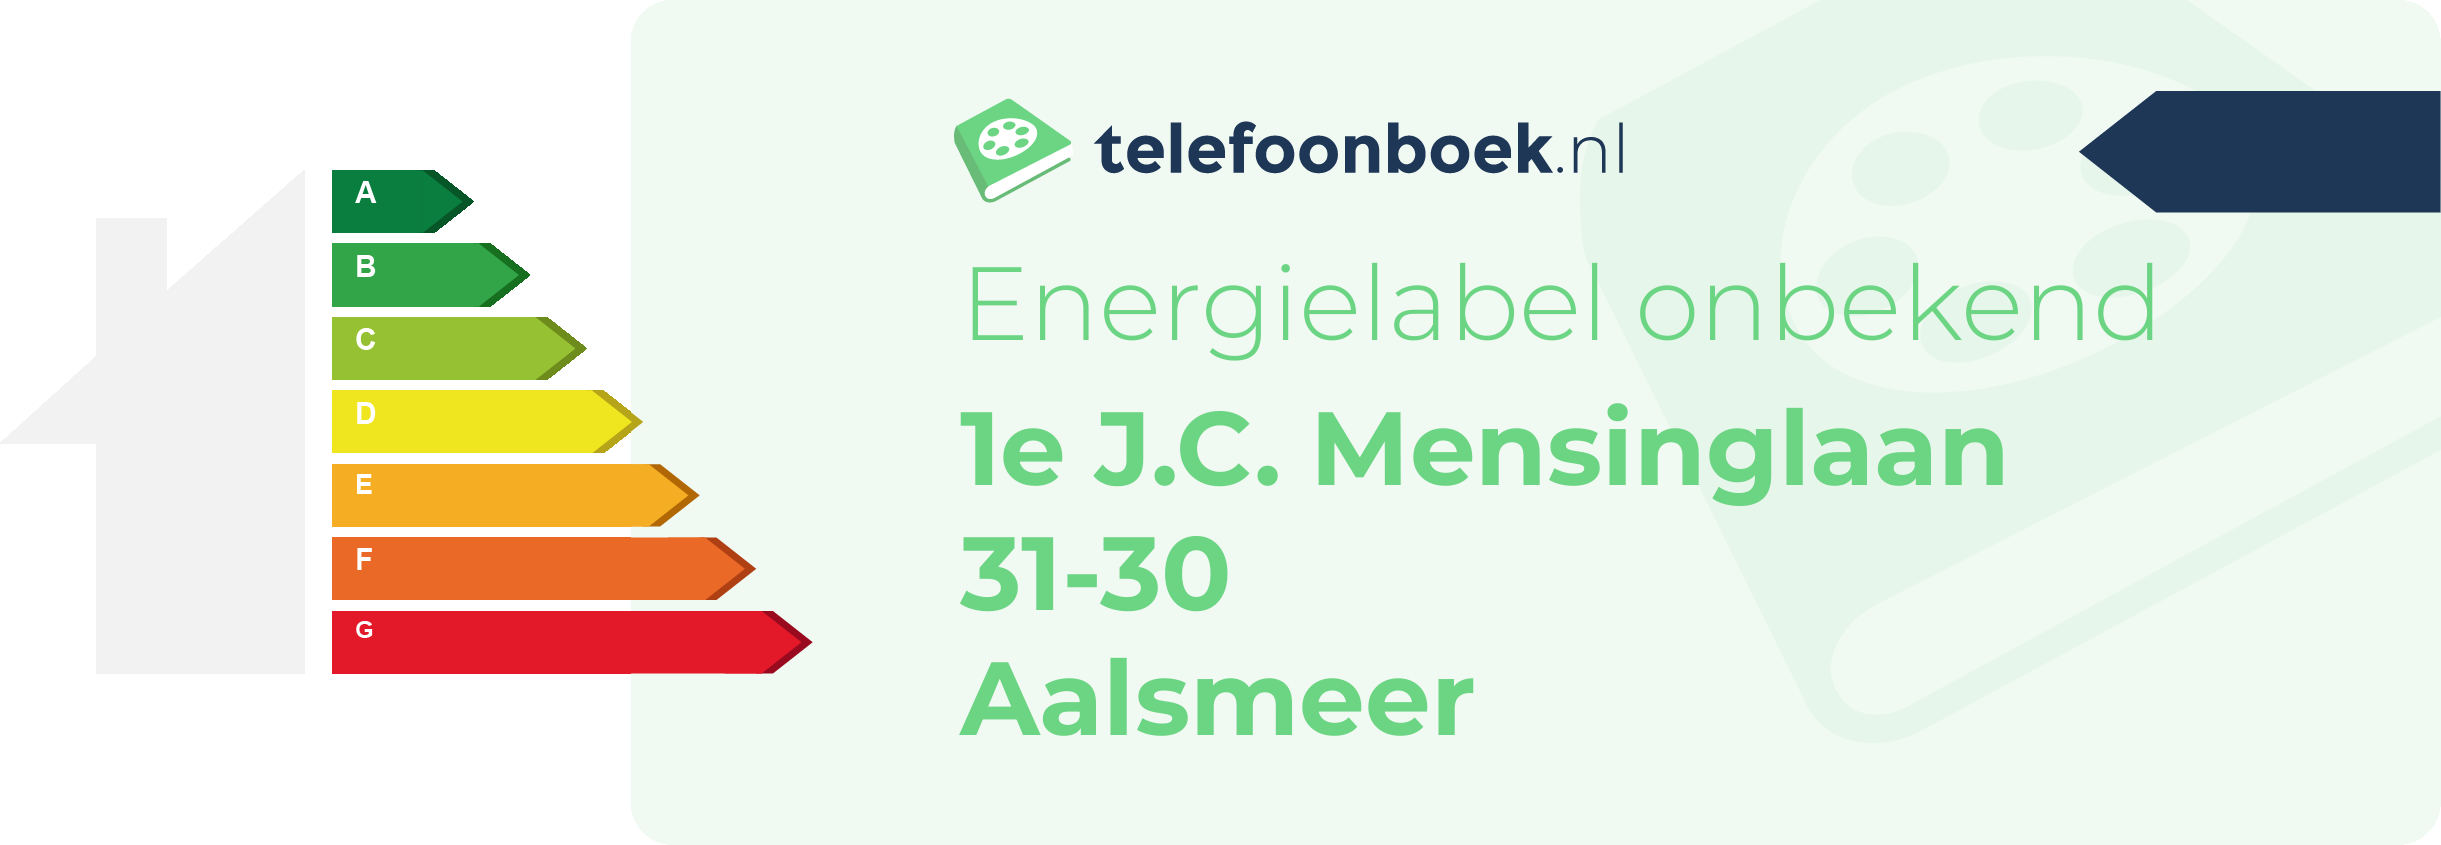 Energielabel 1e J.C. Mensinglaan 31-30 Aalsmeer